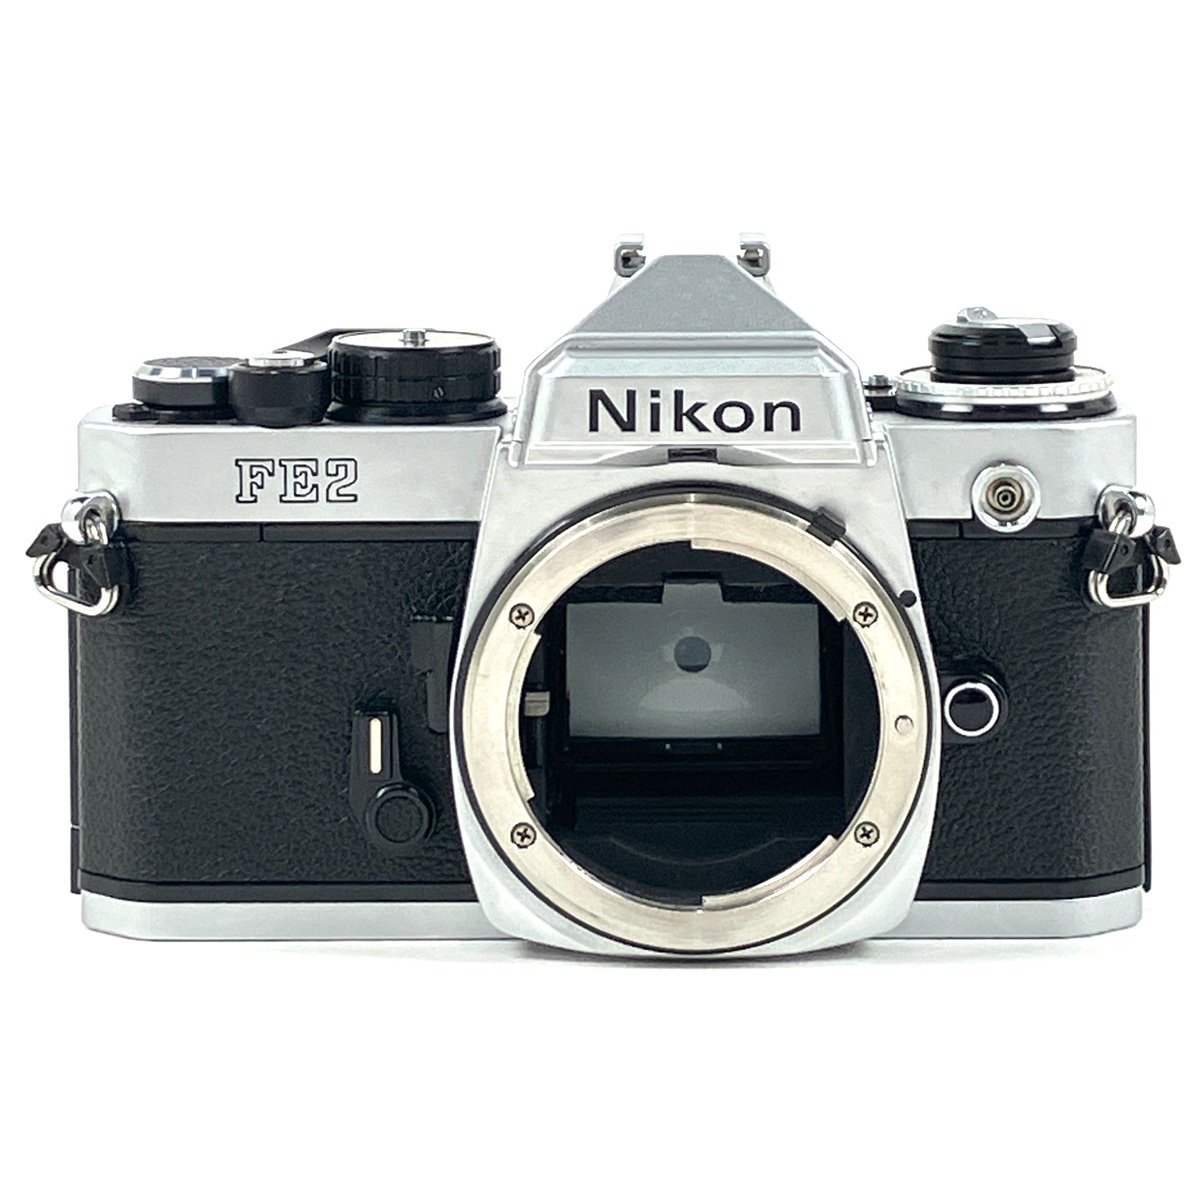 素敵な ニコン Nikon 【中古】 一眼レフカメラ マニュアルフォーカス